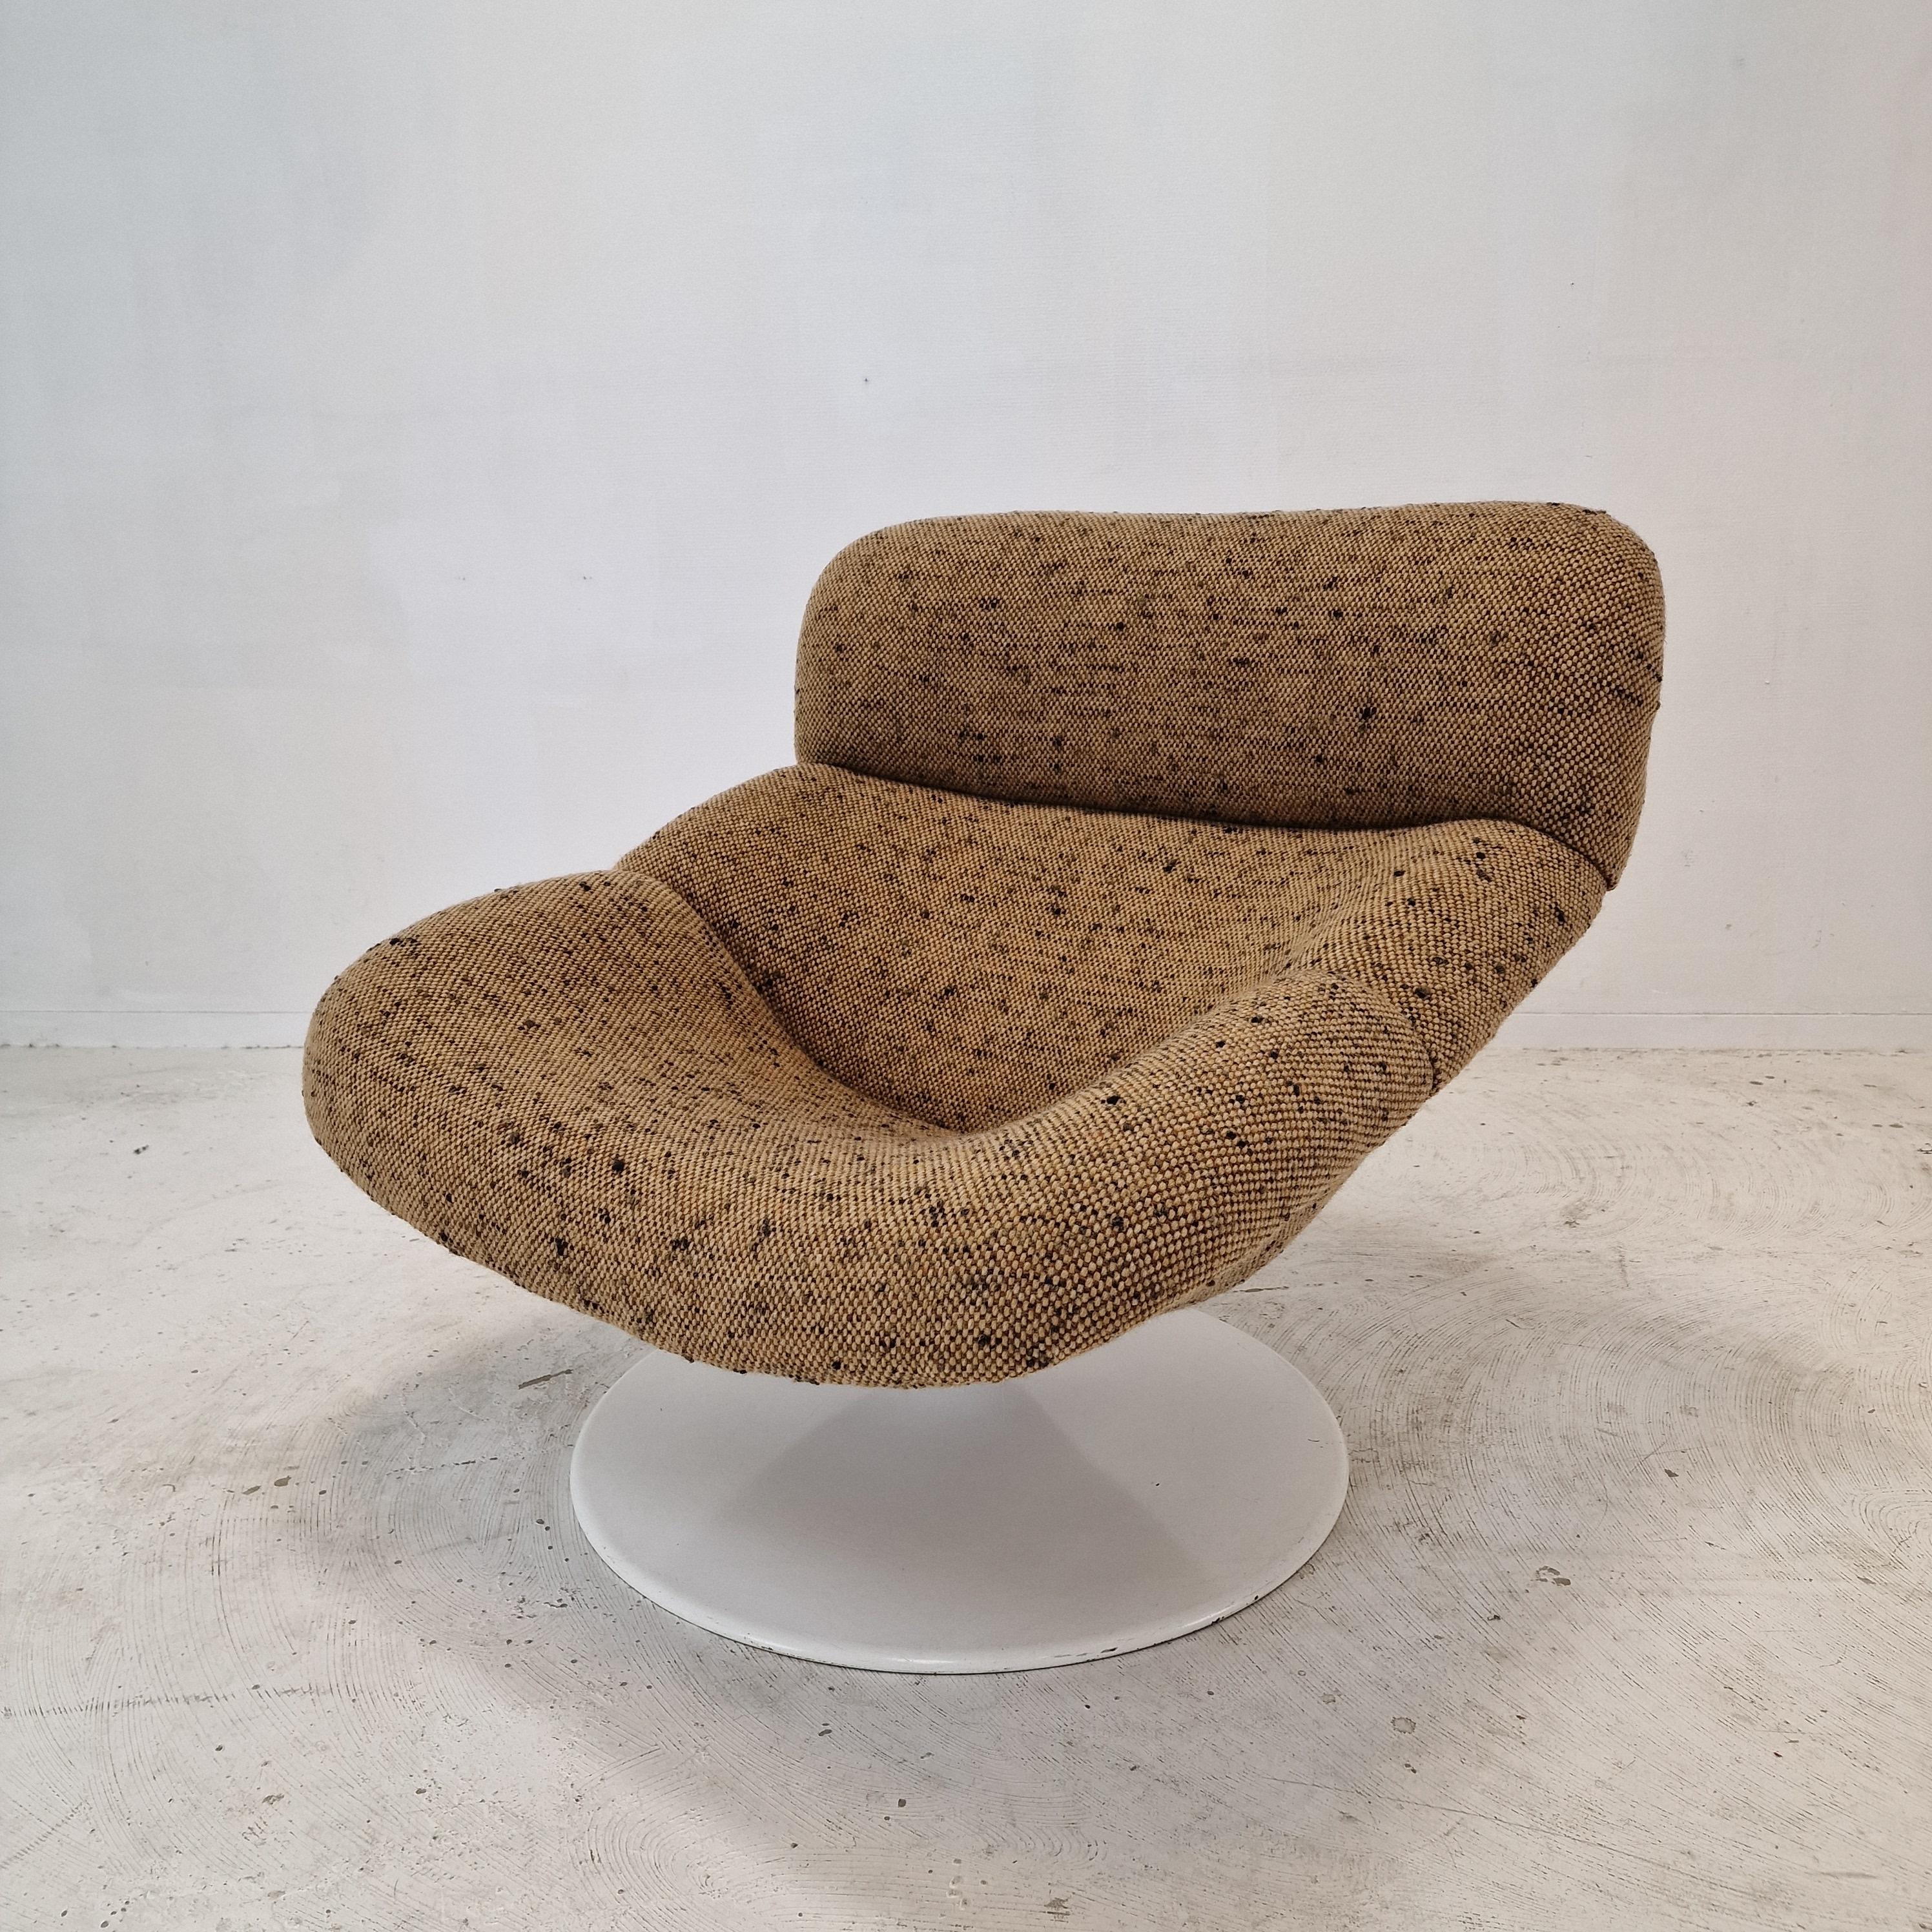 Chaise longue Artifort F518 extrêmement confortable. 
Conçu par le célèbre designer anglais Geoffrey Harcourt dans les années 70. 

Cadre en bois très solide avec un grand pied métallique pivotant.

La chaise vient d'être restaurée avec un nouveau